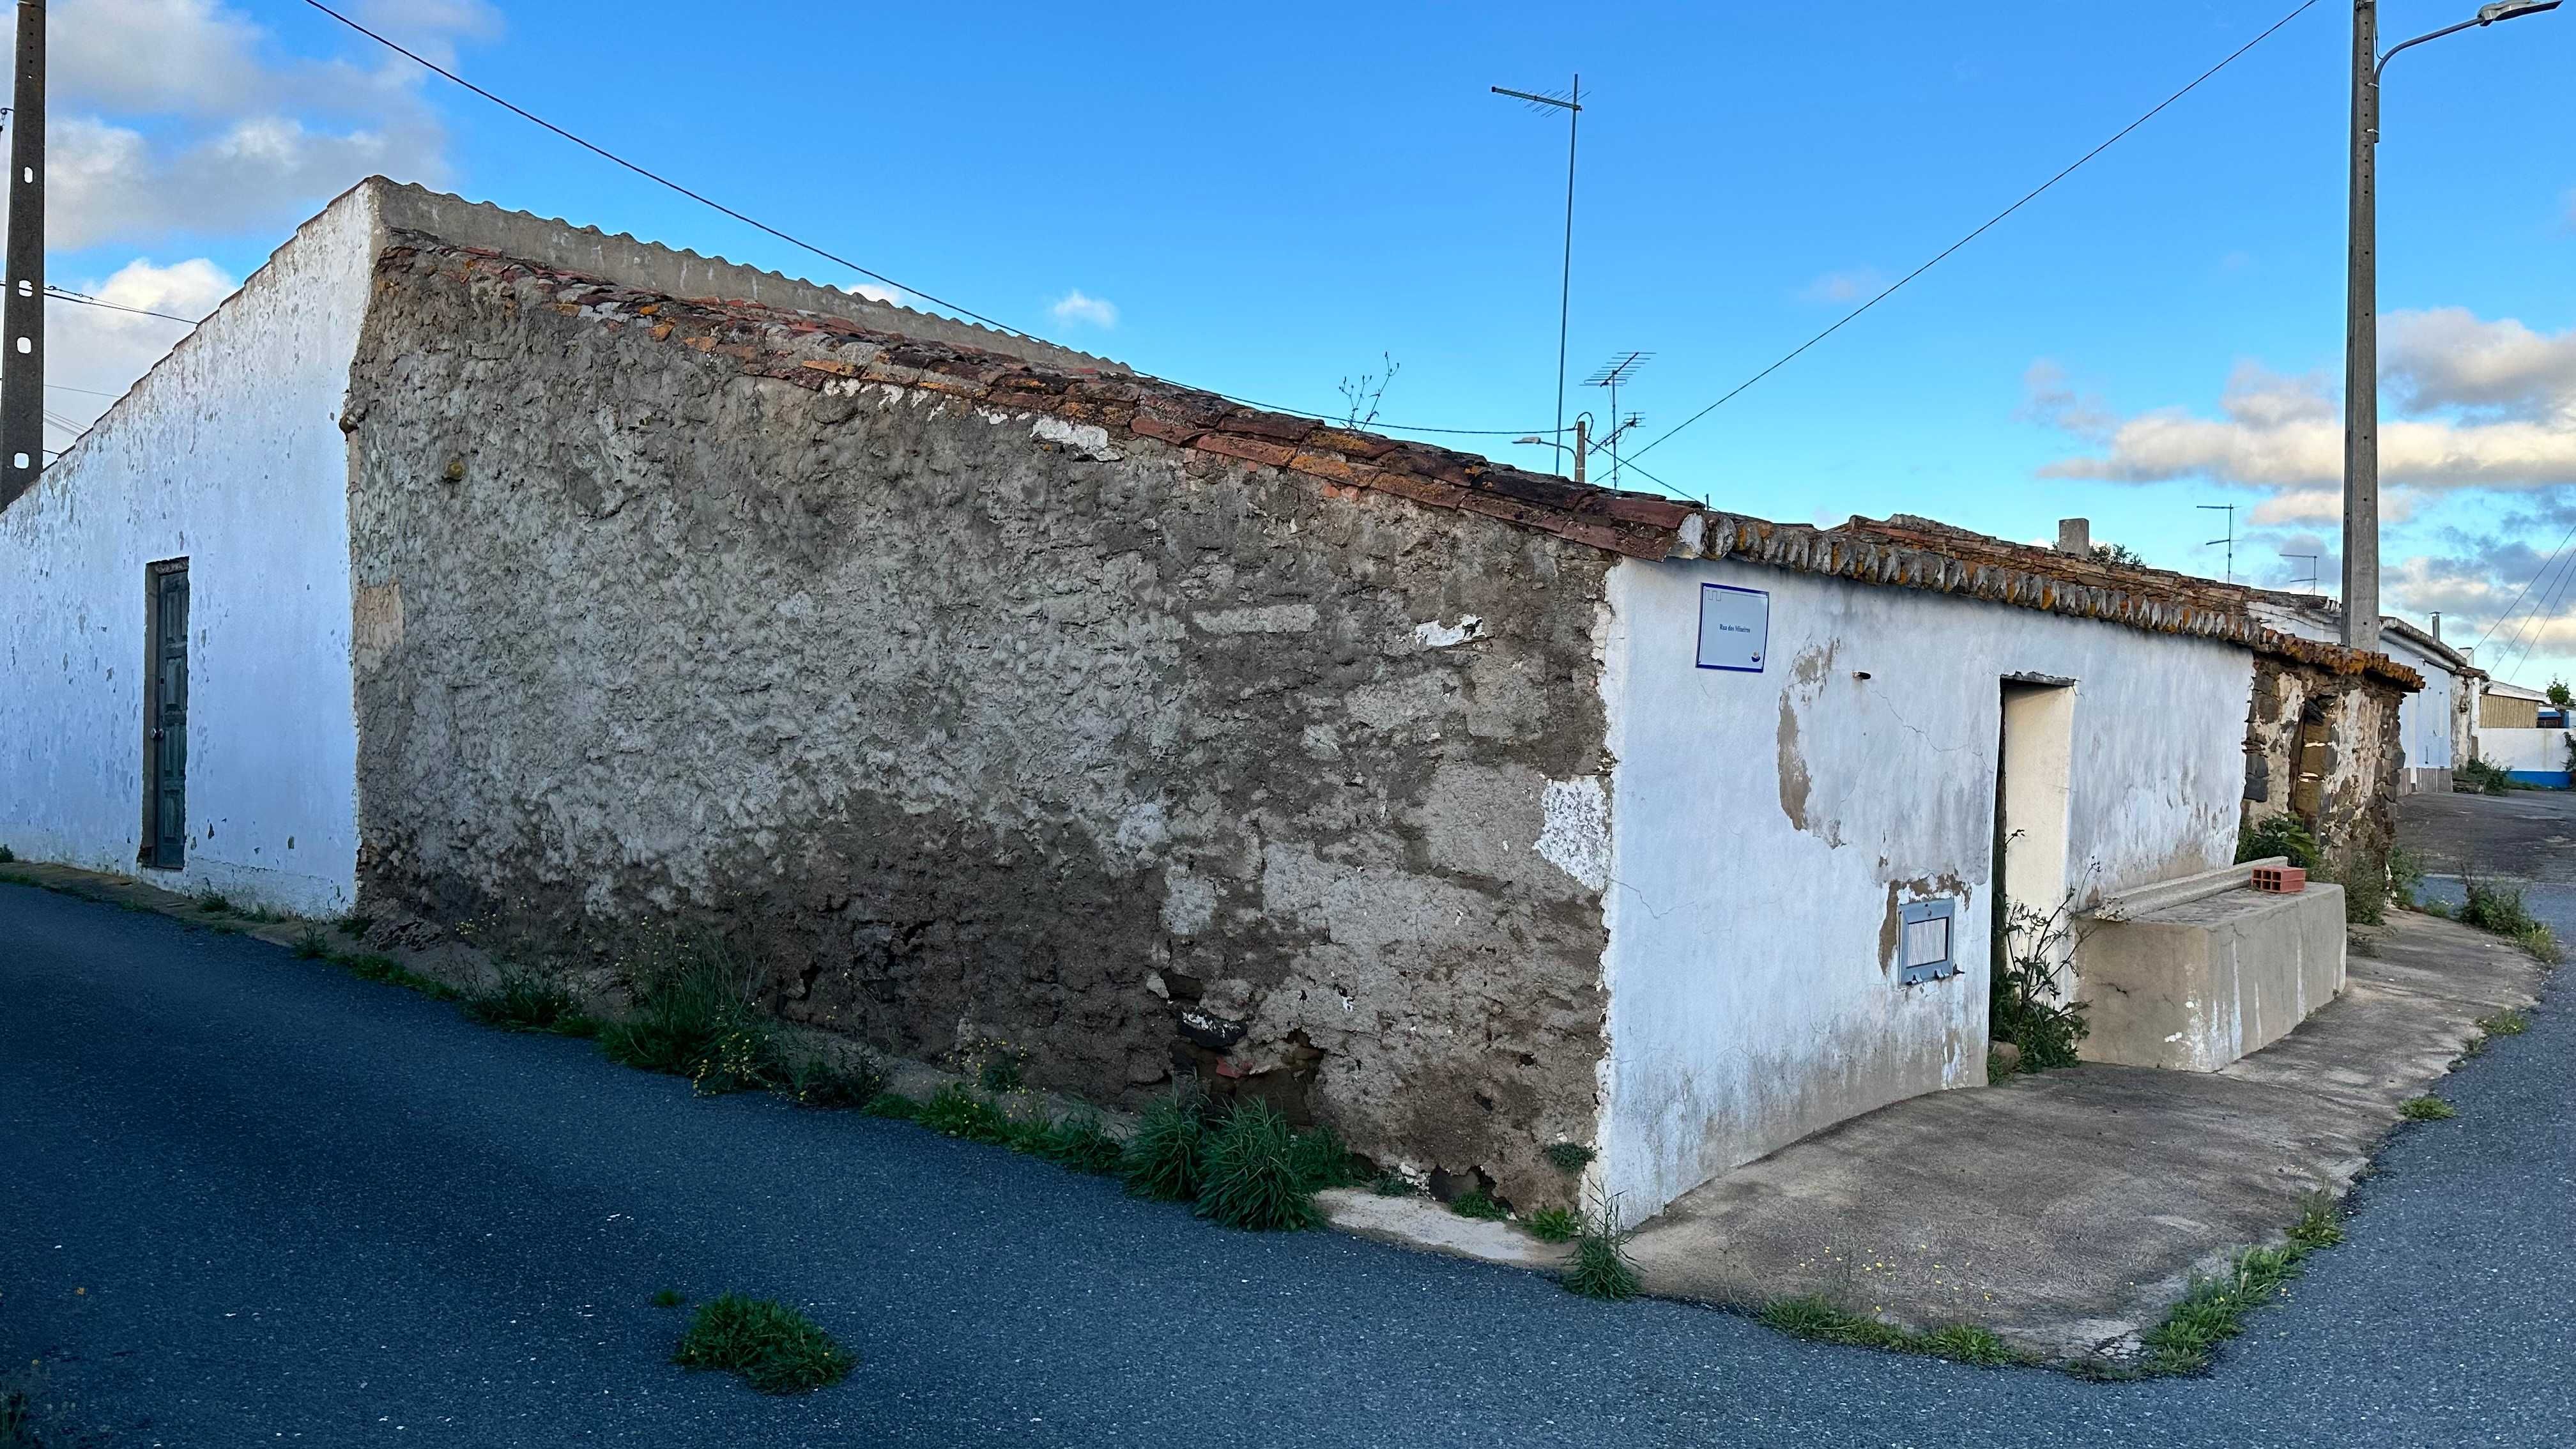 Casa para venda no concelho de Mértola